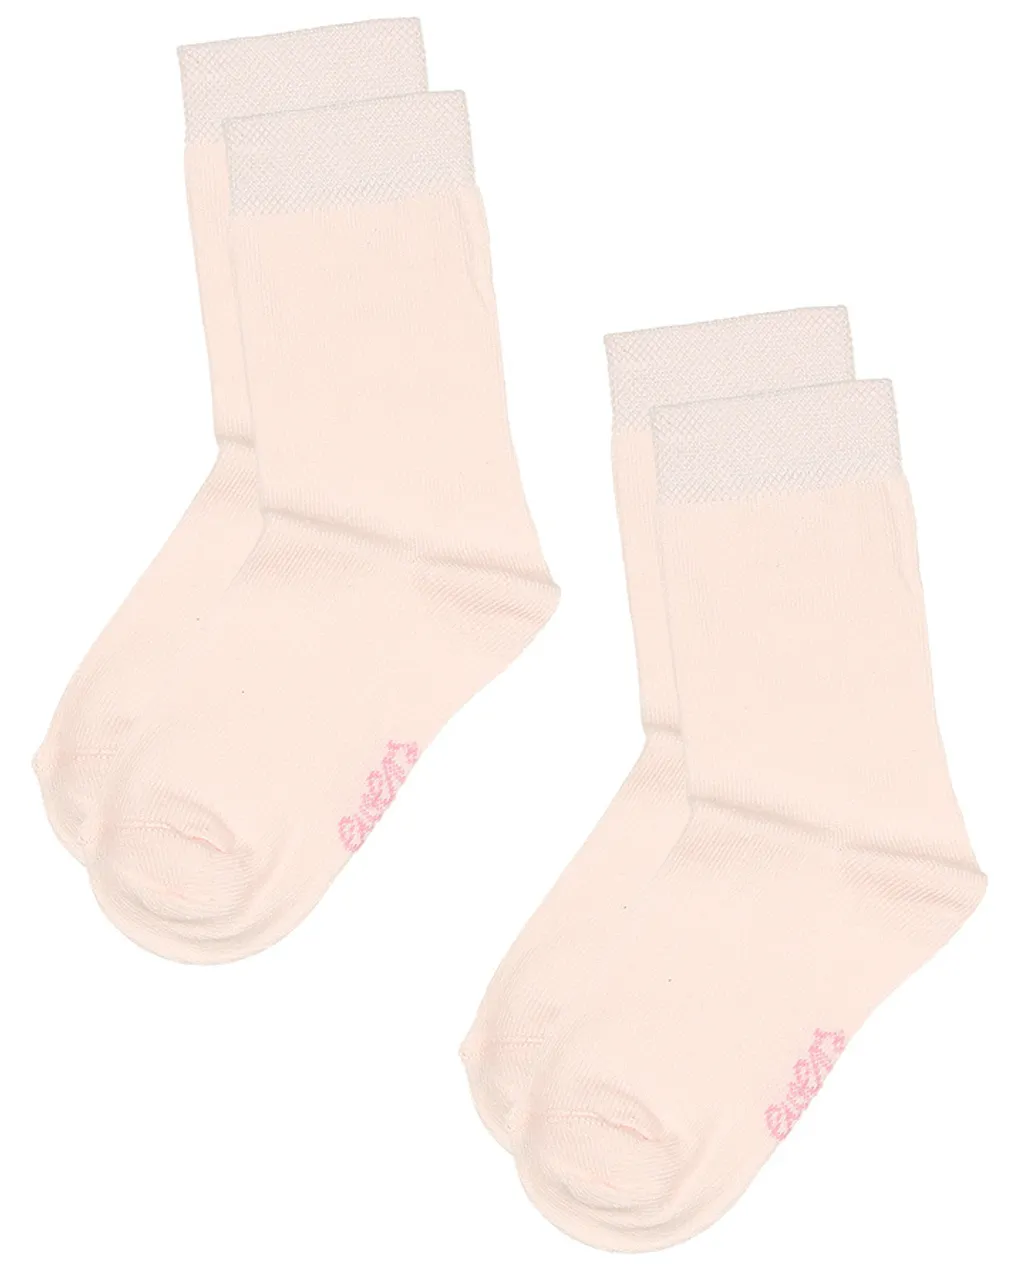 Socken ESSENTIAL 6er-Pack in latte/rosa/wildrose